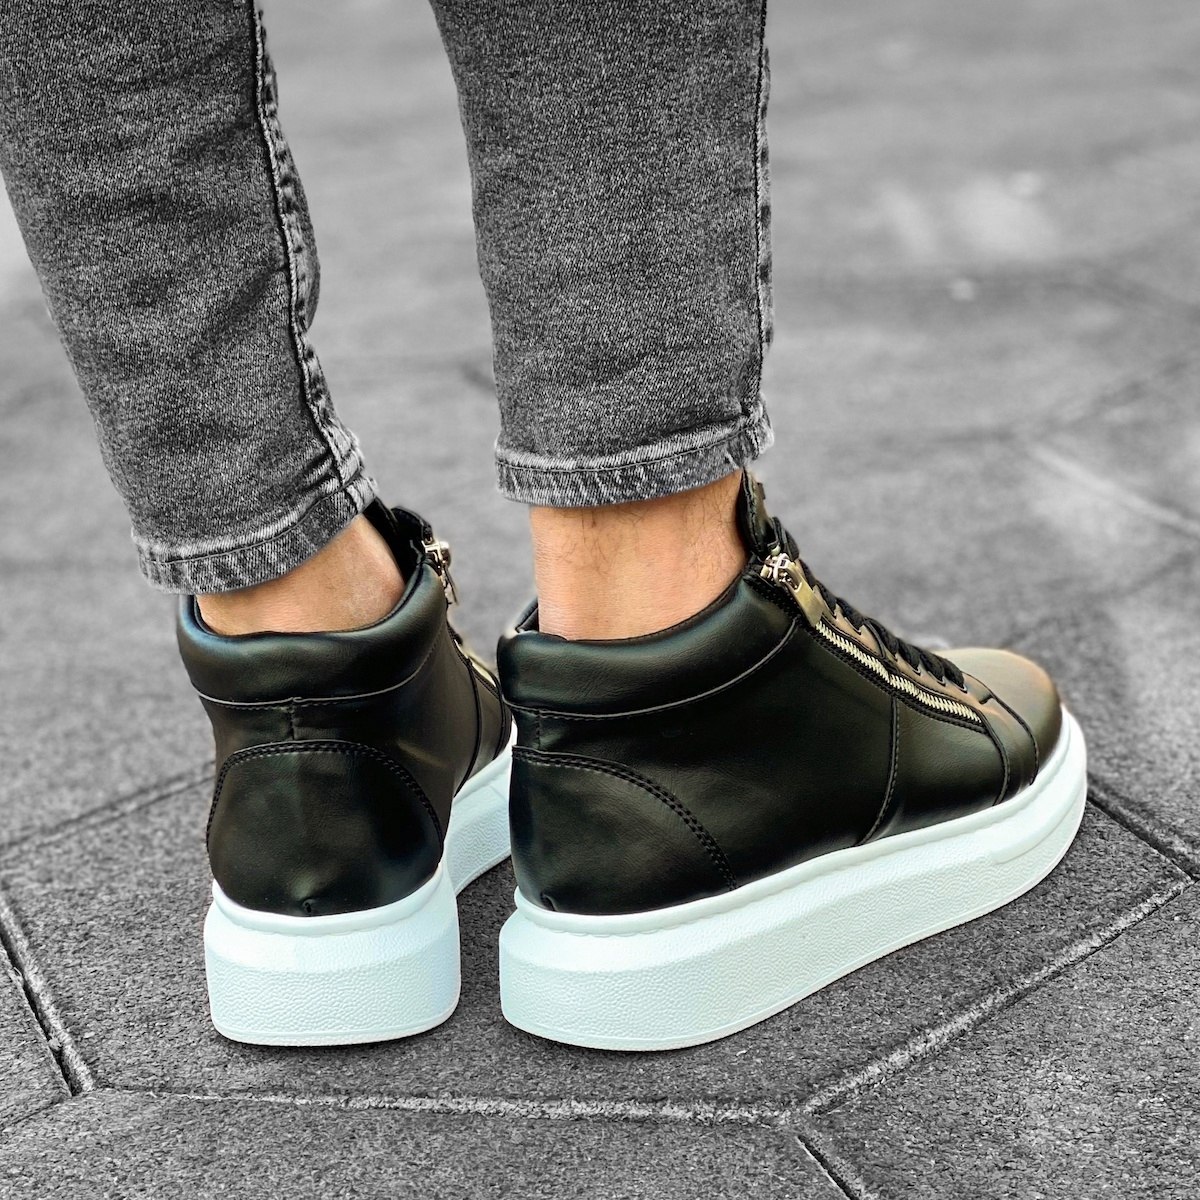 Herren High Top Sneakers Designer Schuhe mit Reissverschluss in schwarz-weiss - 4